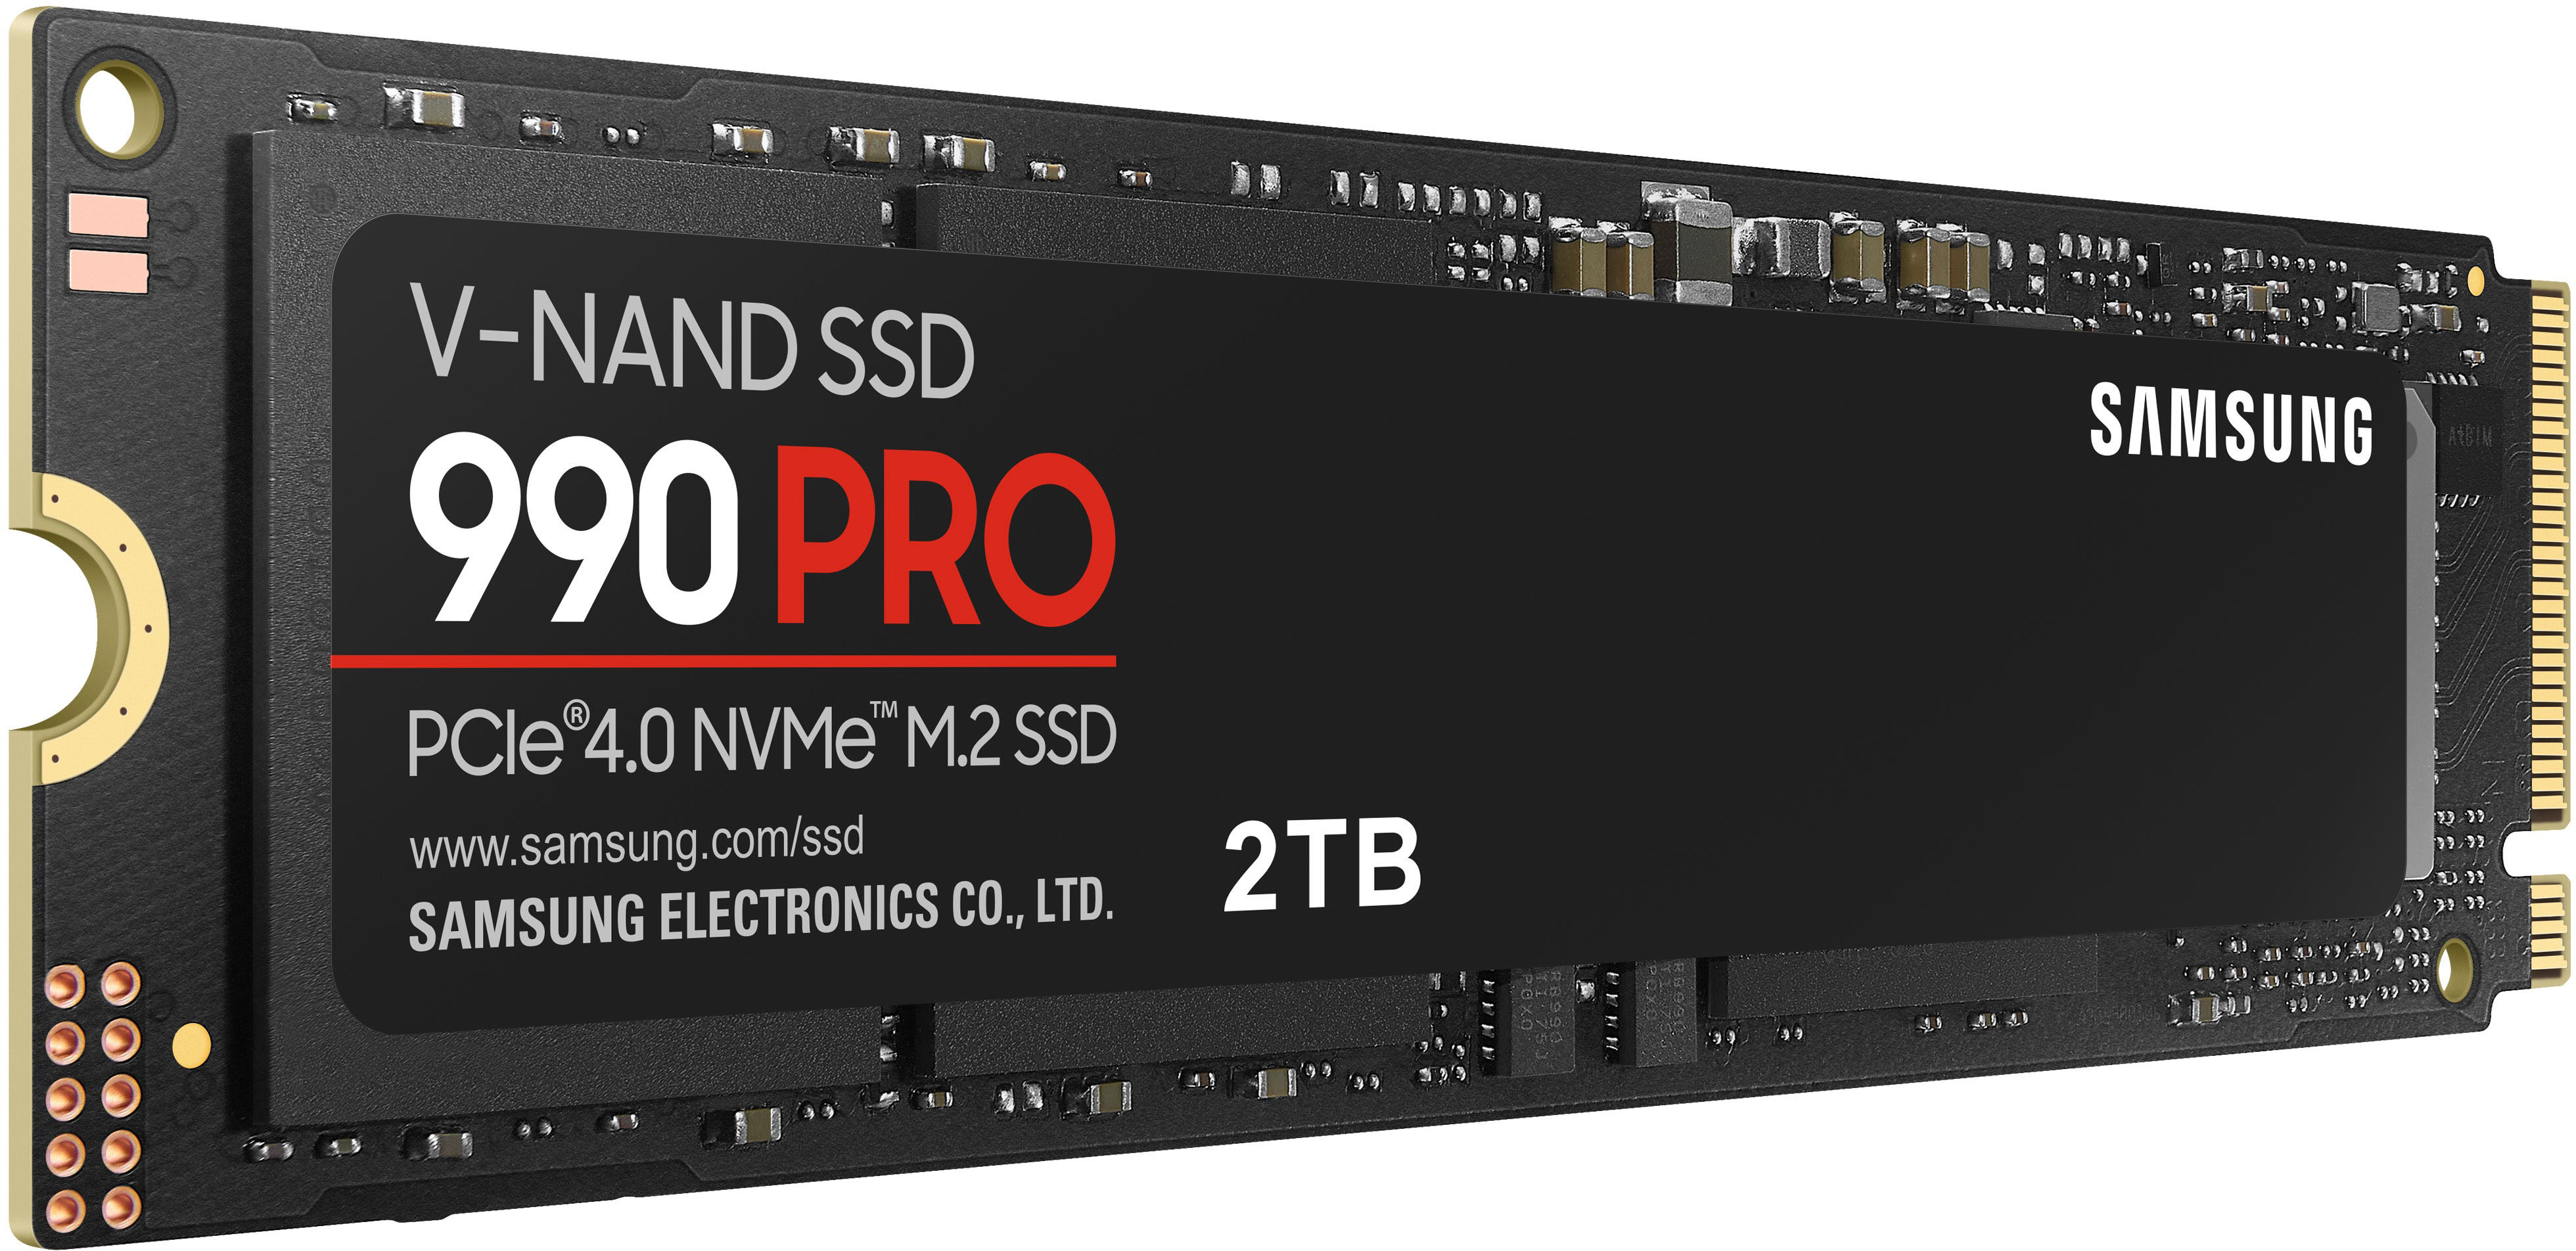 990 PRO PCIe 4.0 NVMe M.2 SSD